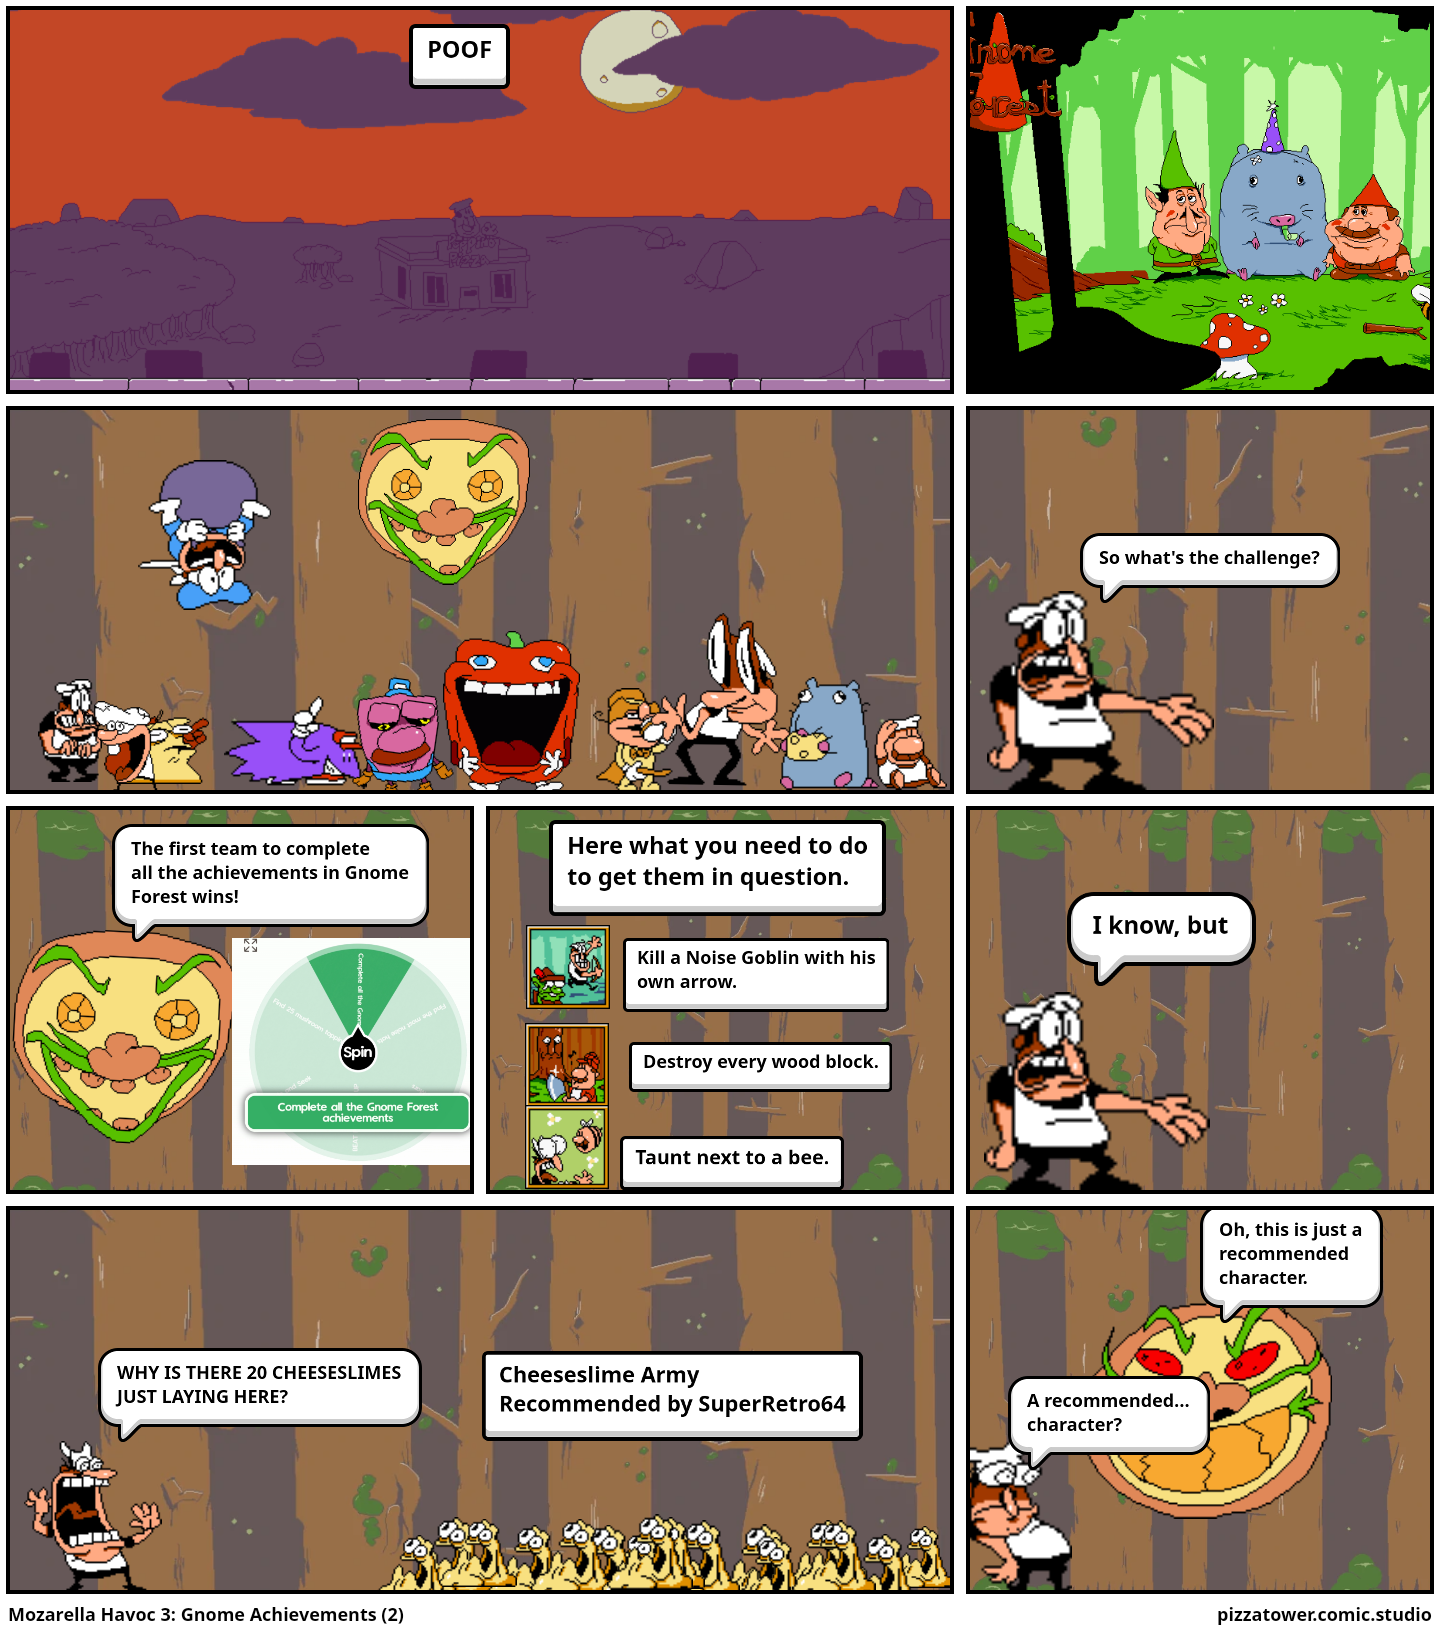 Mozarella Havoc 3: Gnome Achievements (2)